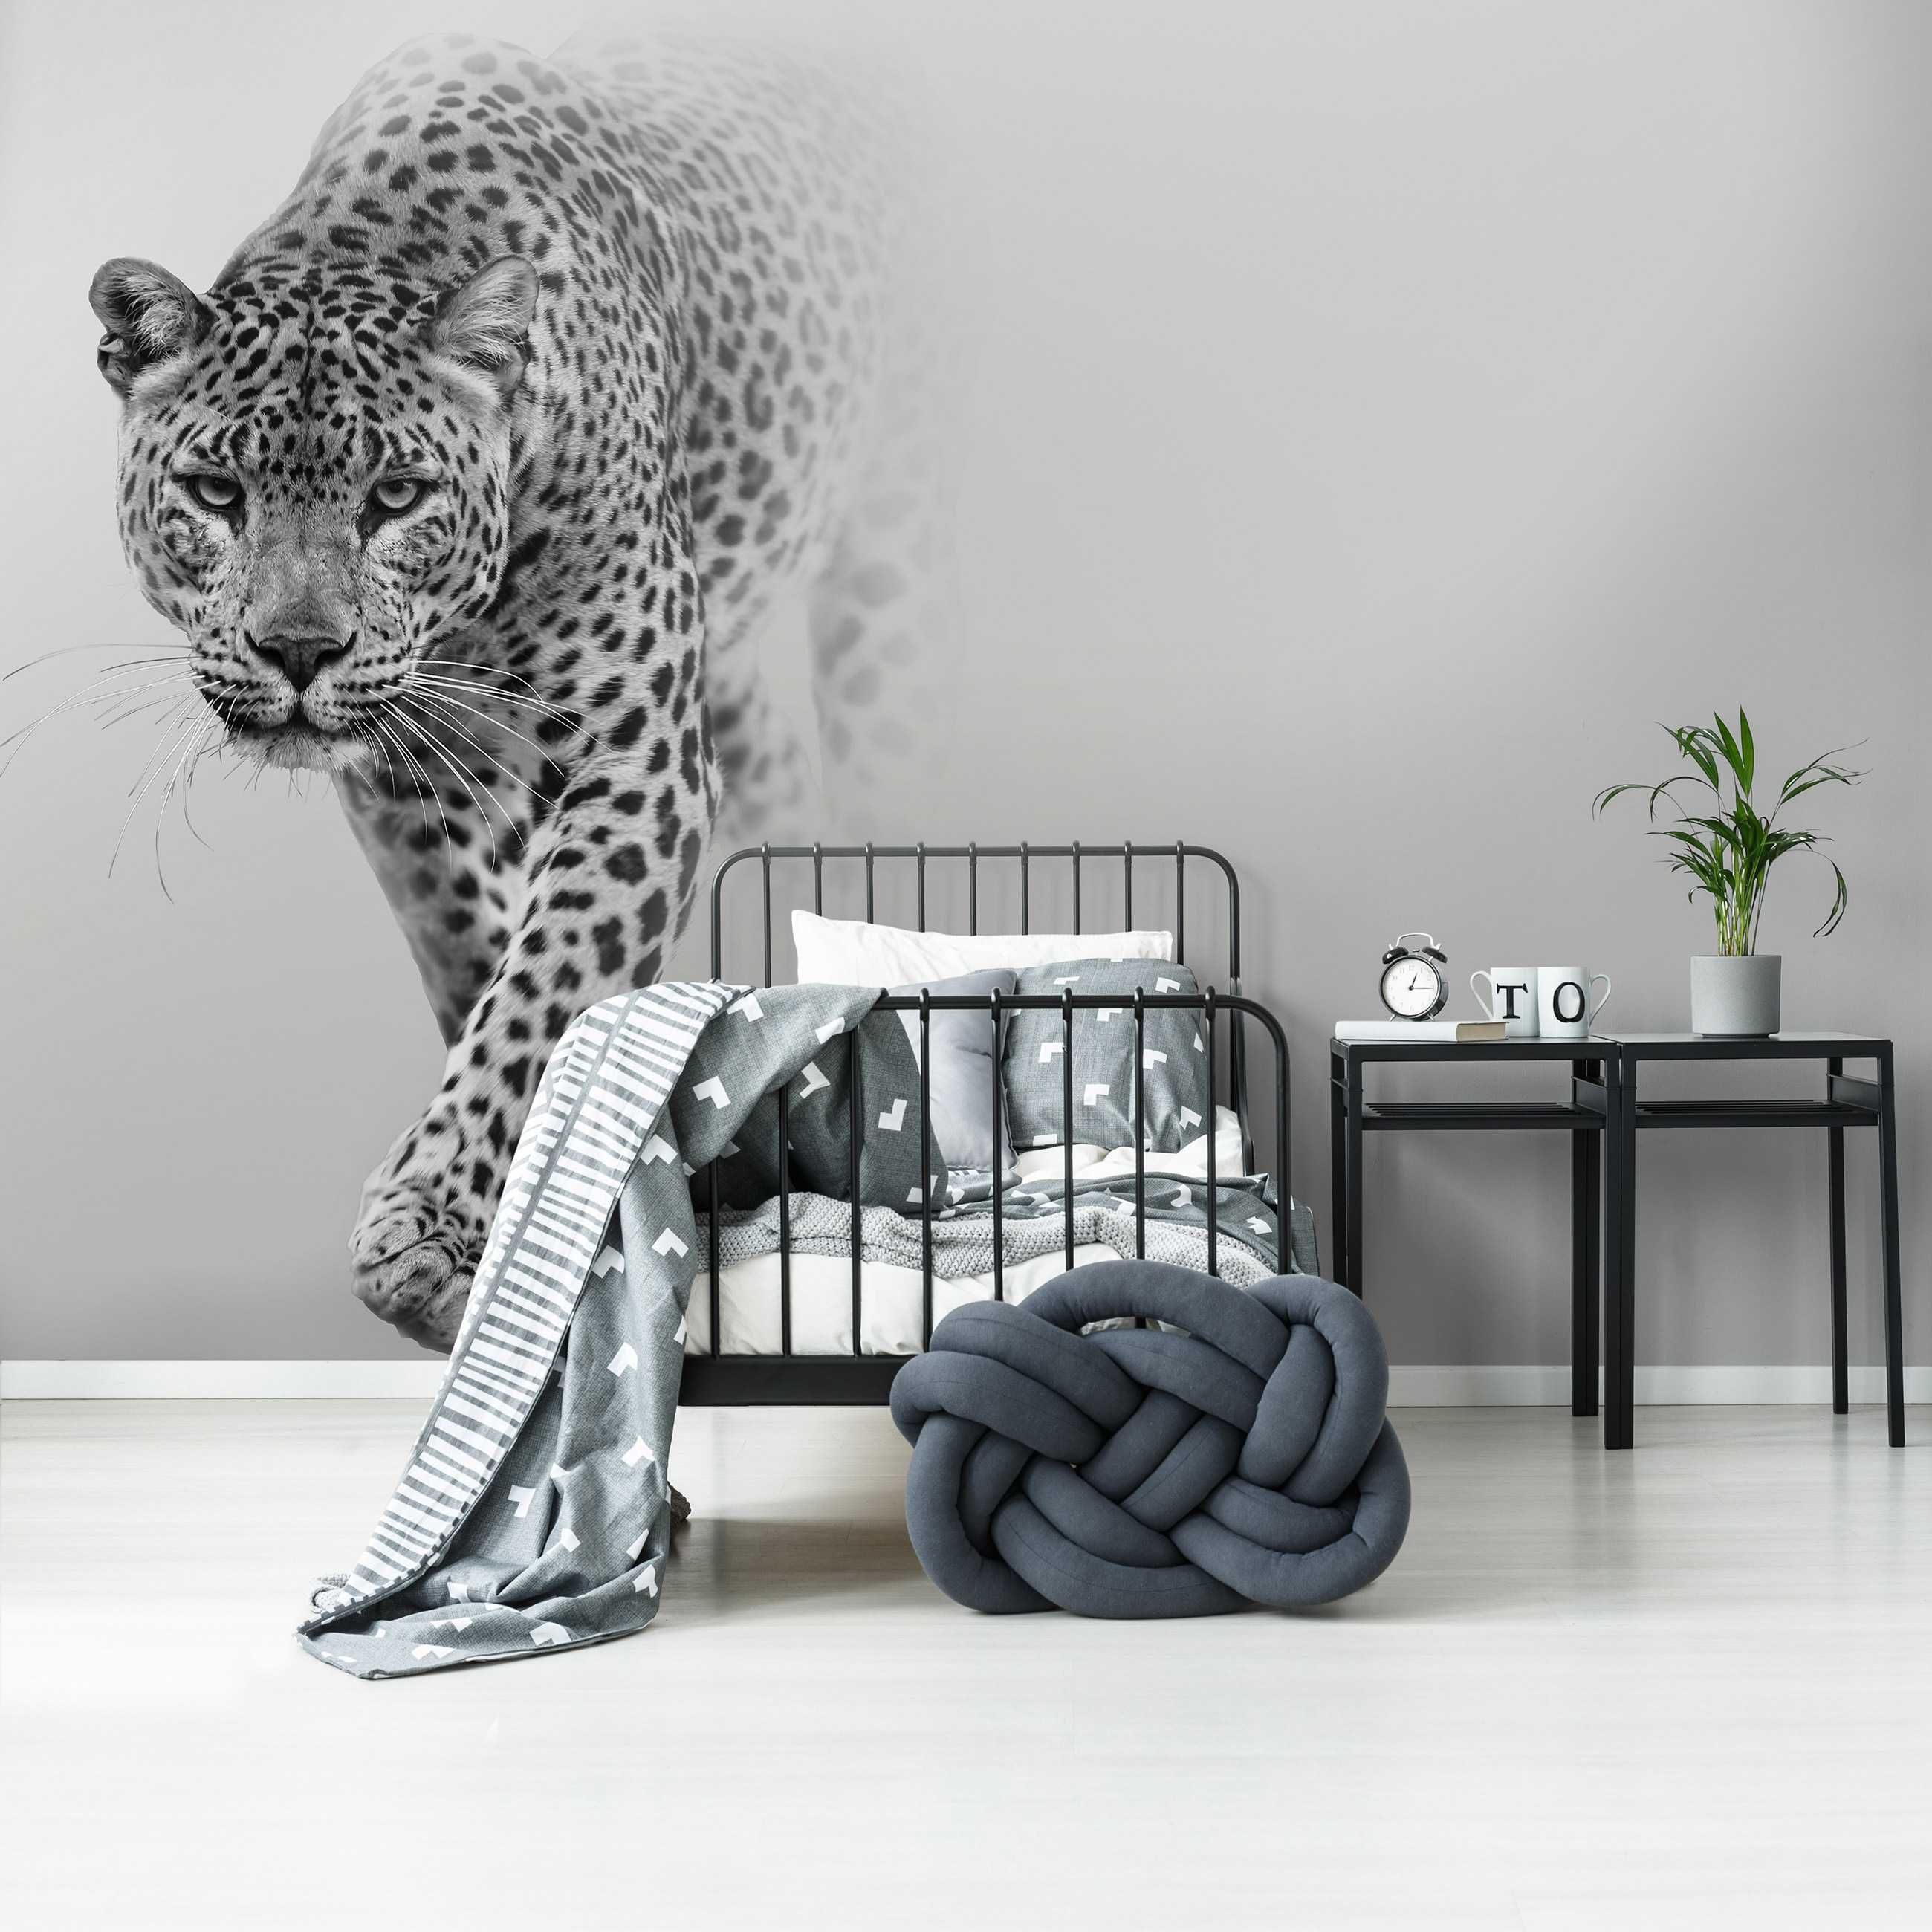 Fototapeta Jaguar Zwierzęta Dzikość Na Ścianę 3D Twój Rozmiar + KLEJ